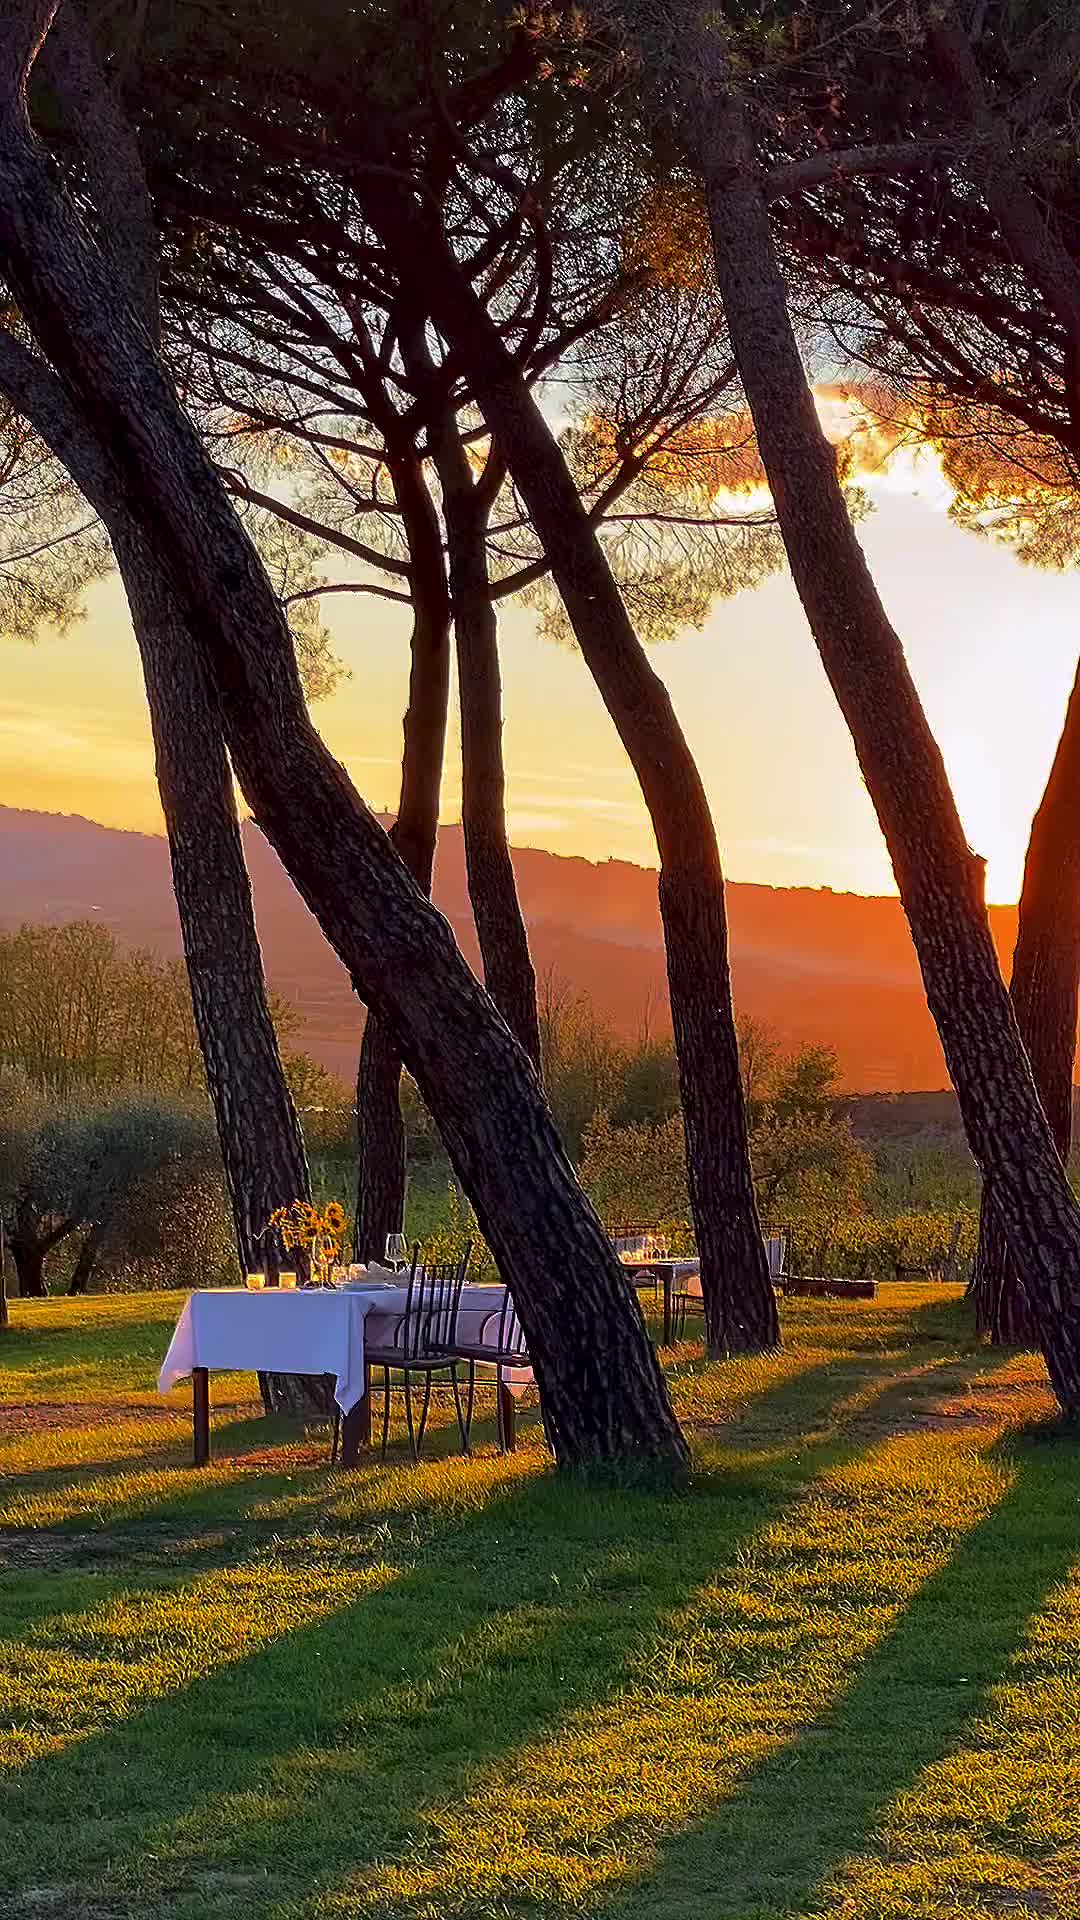 Sunrise Magic at Villa Cozzano, Italy